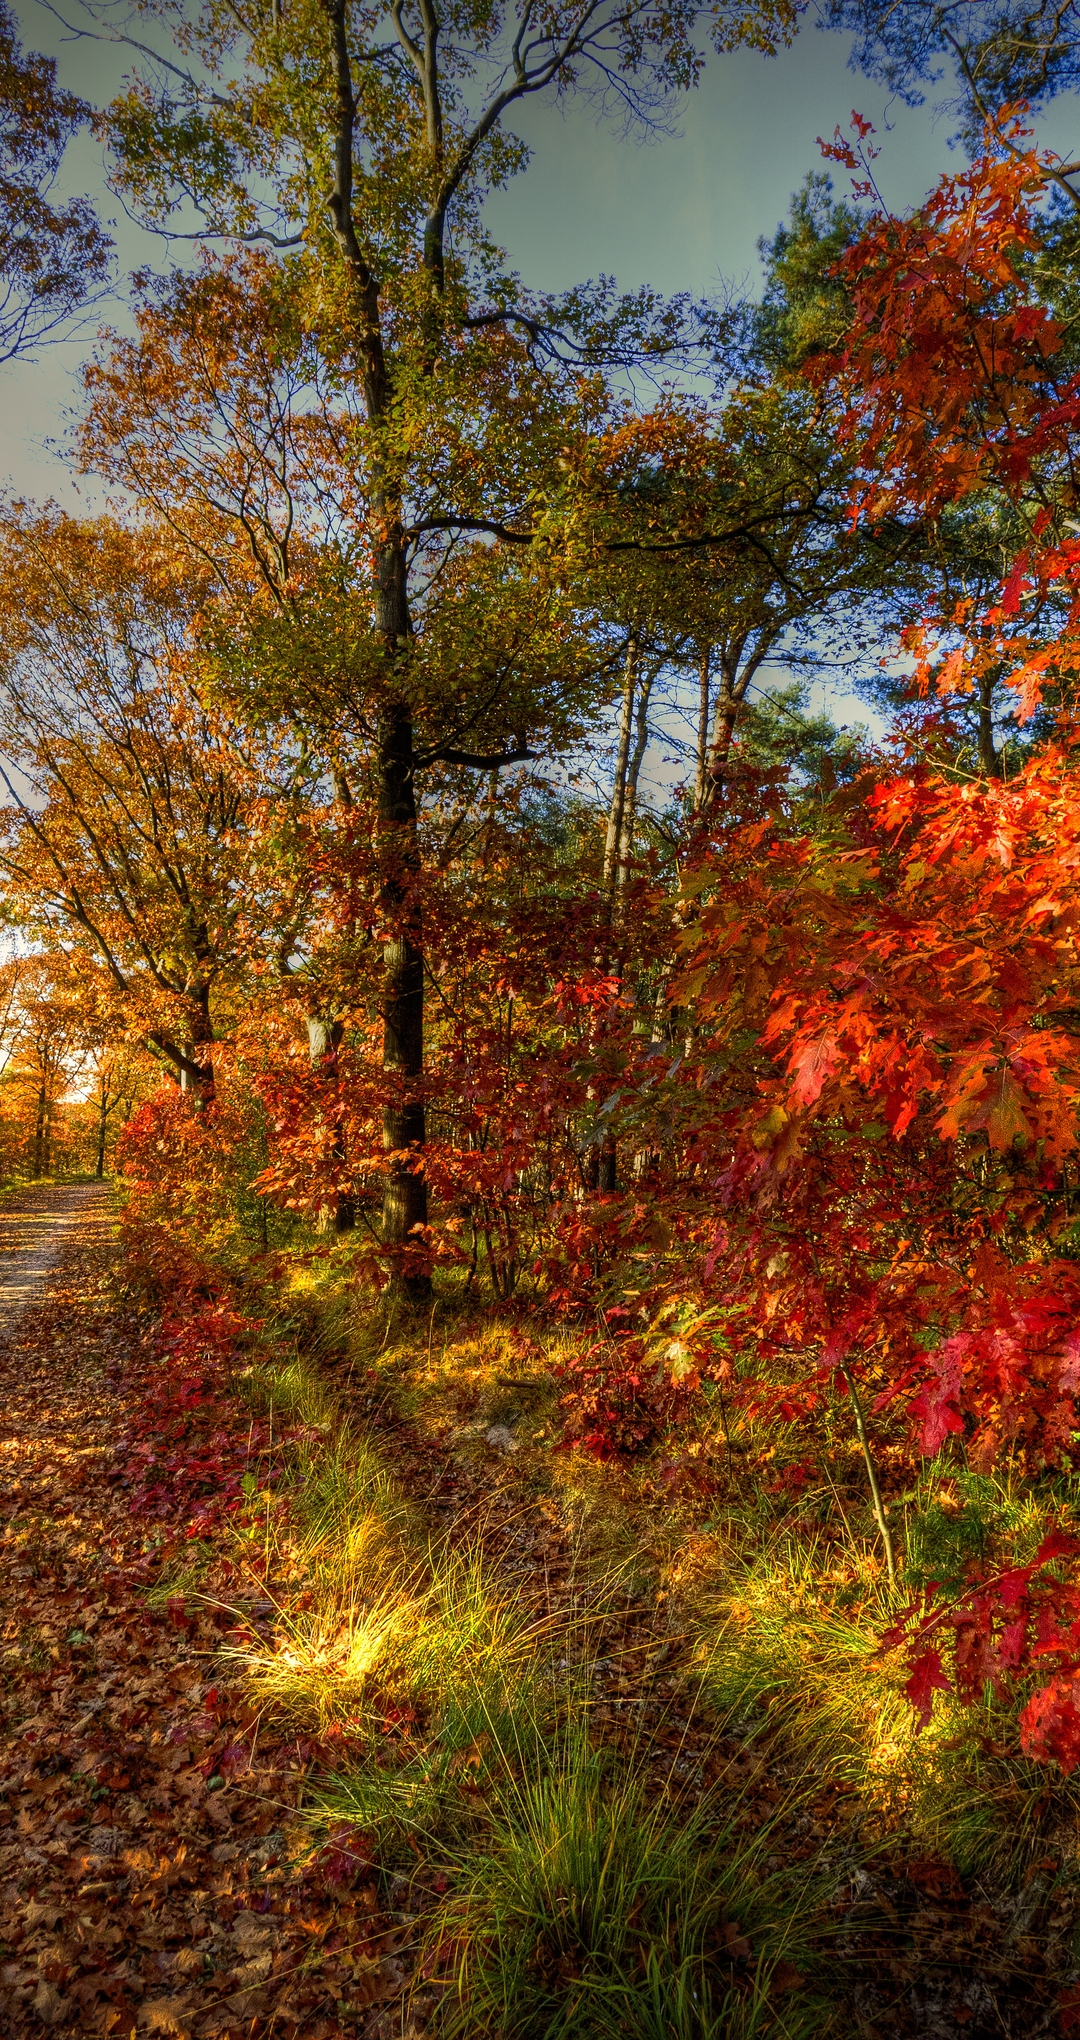 Картинка: Осень, дорожка, деревья, листья, трава, небо